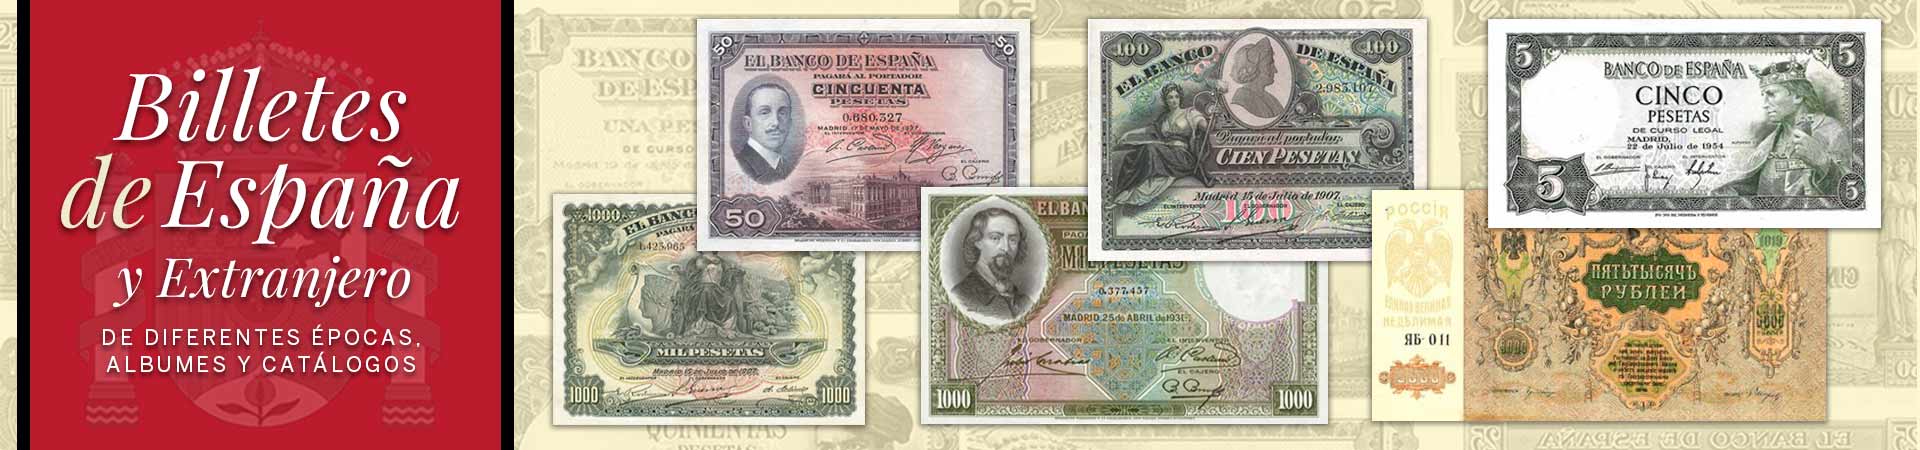 Billetes de España Lamas Bolaño